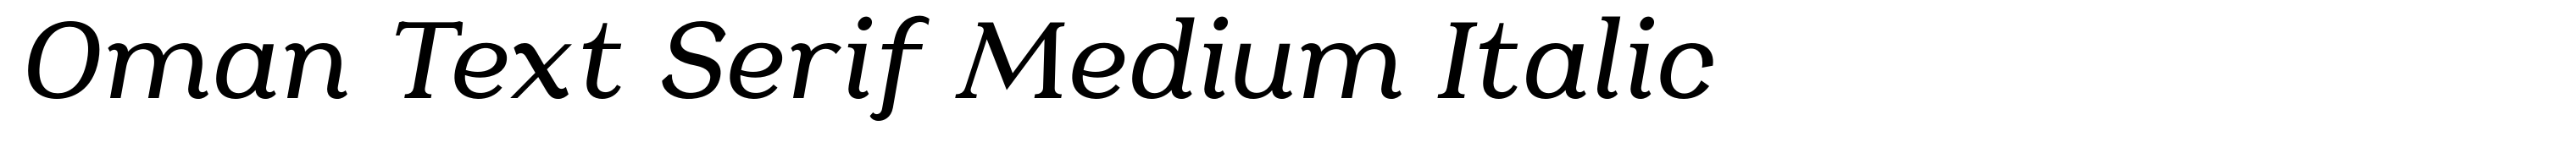 Oman Text Serif Medium Italic